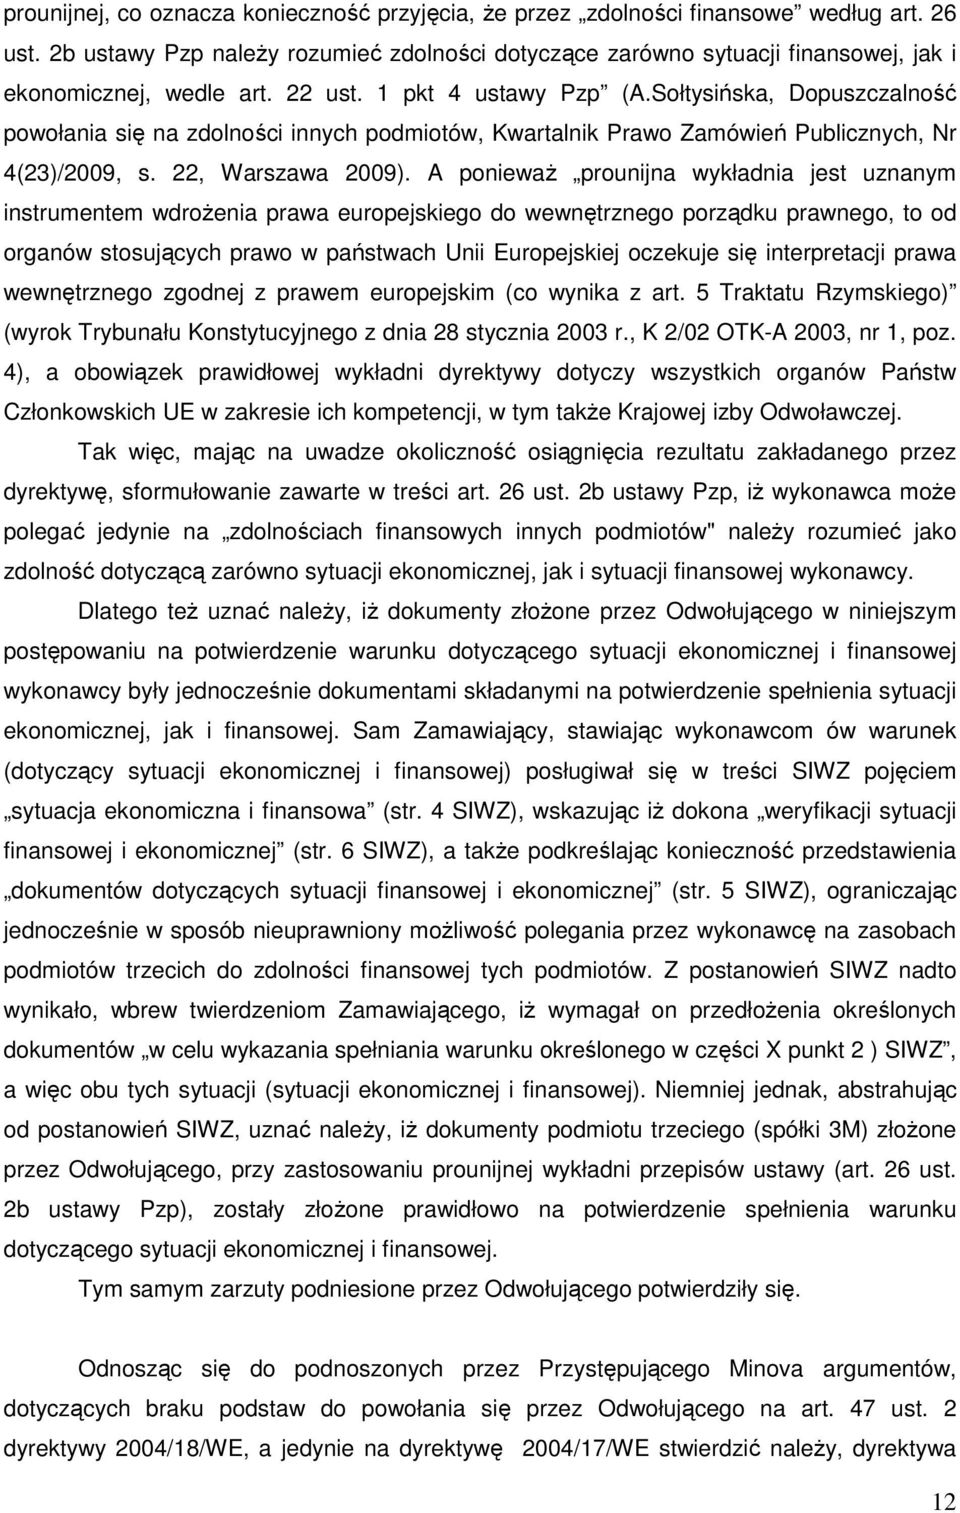 Sołtysińska, Dopuszczalność powołania się na zdolności innych podmiotów, Kwartalnik Prawo Zamówień Publicznych, Nr 4(23)/2009, s. 22, Warszawa 2009).